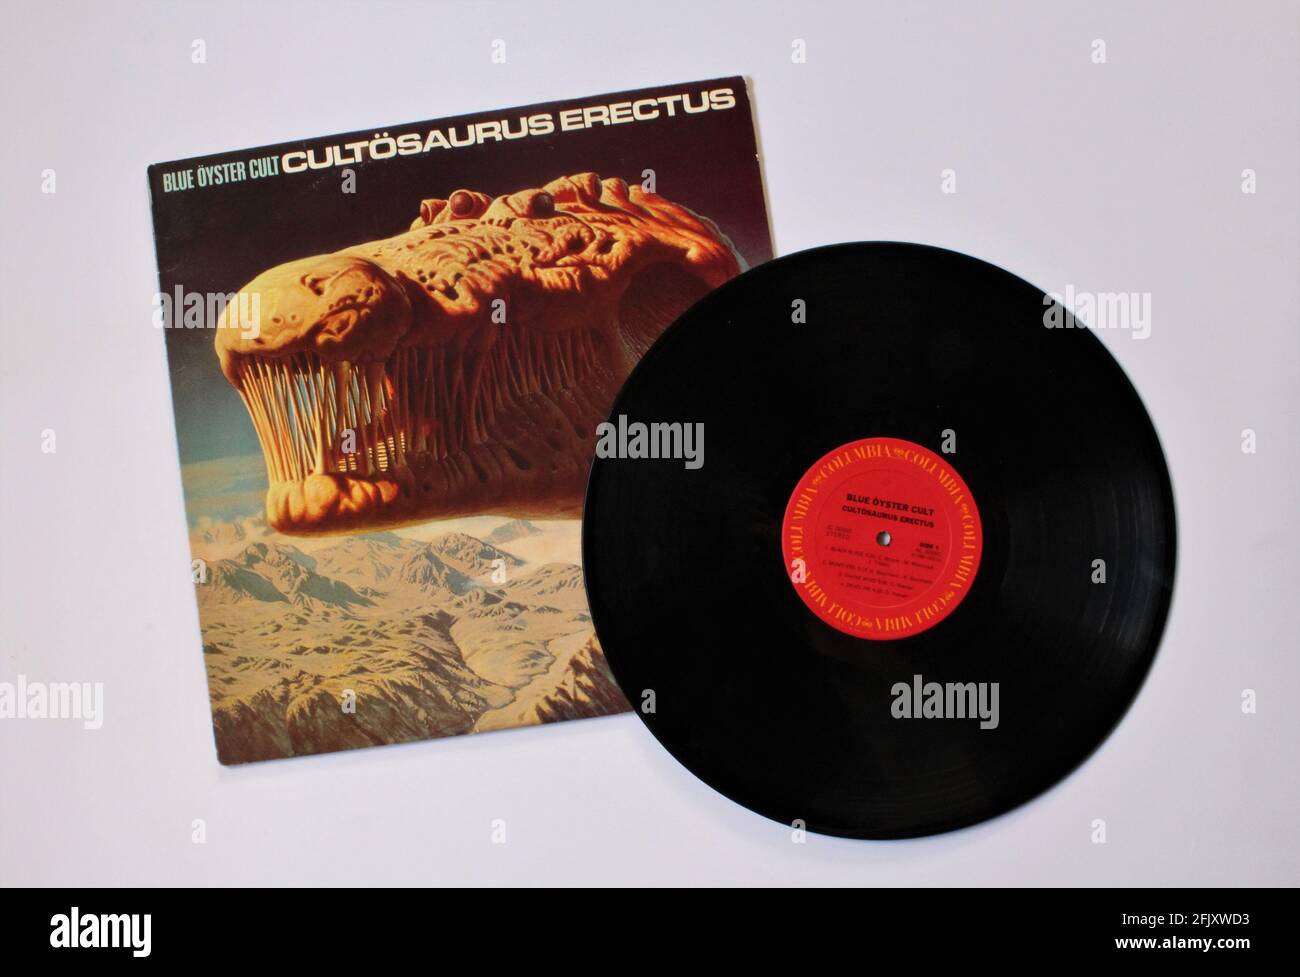 Heavy Metal, Hard Rock und Progressive Rock Künstler, Blue Oyster Cult Musikalbum auf Vinyl LP Disc. Mit Dem Titel: Cultösaurus Erectus Stockfoto